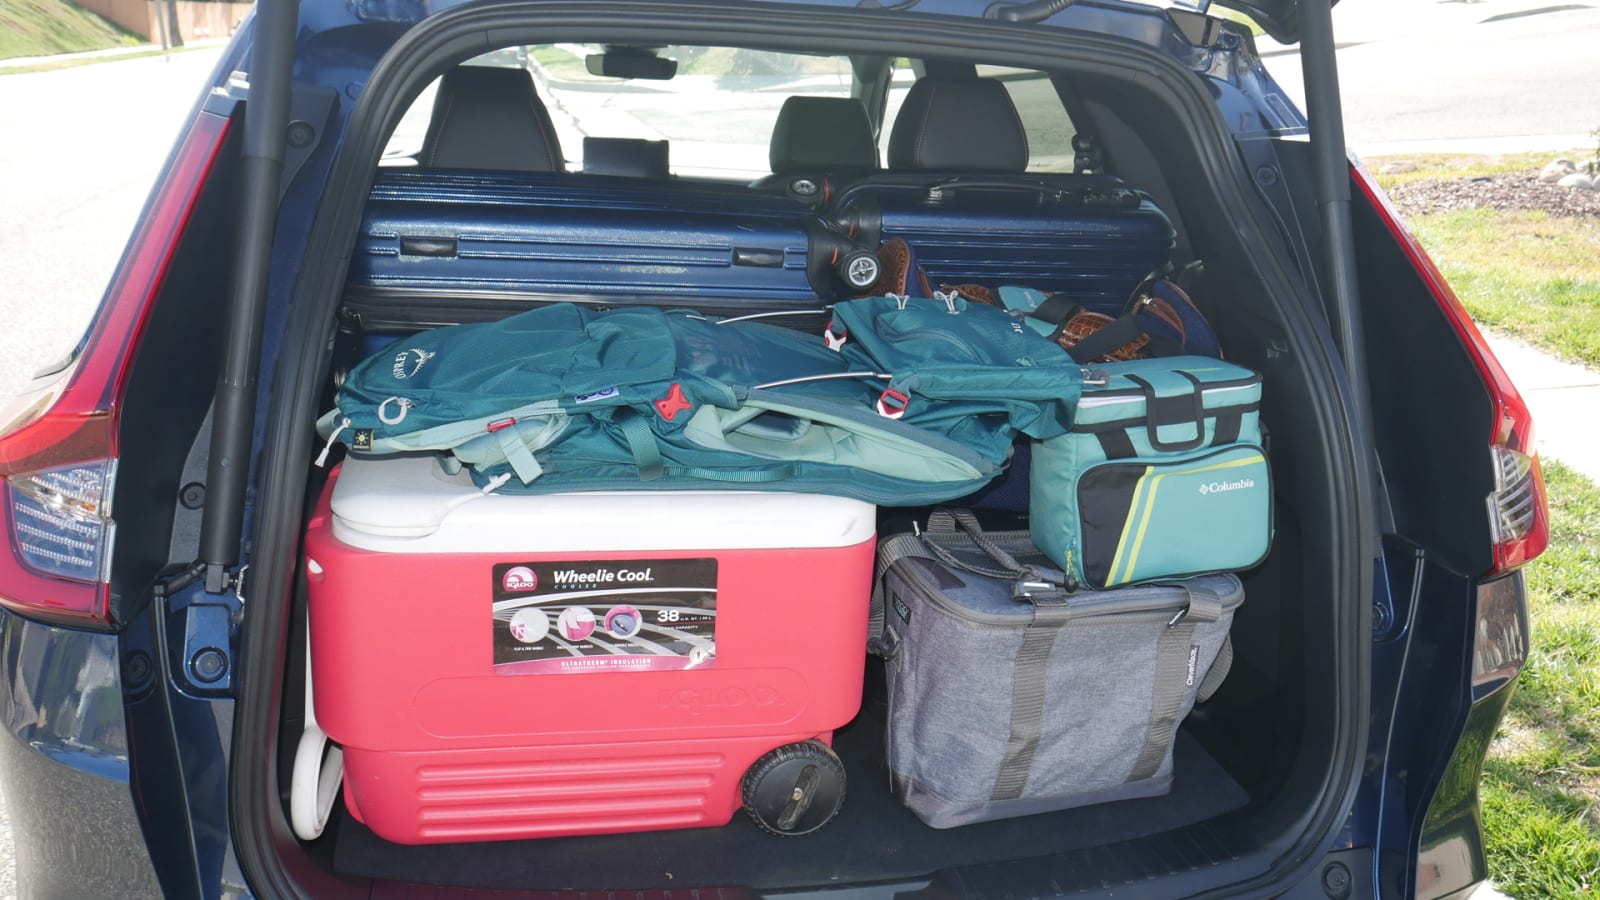 CR V luggage test loadedish Honda CR-V Luggage Test: How much cargo space?